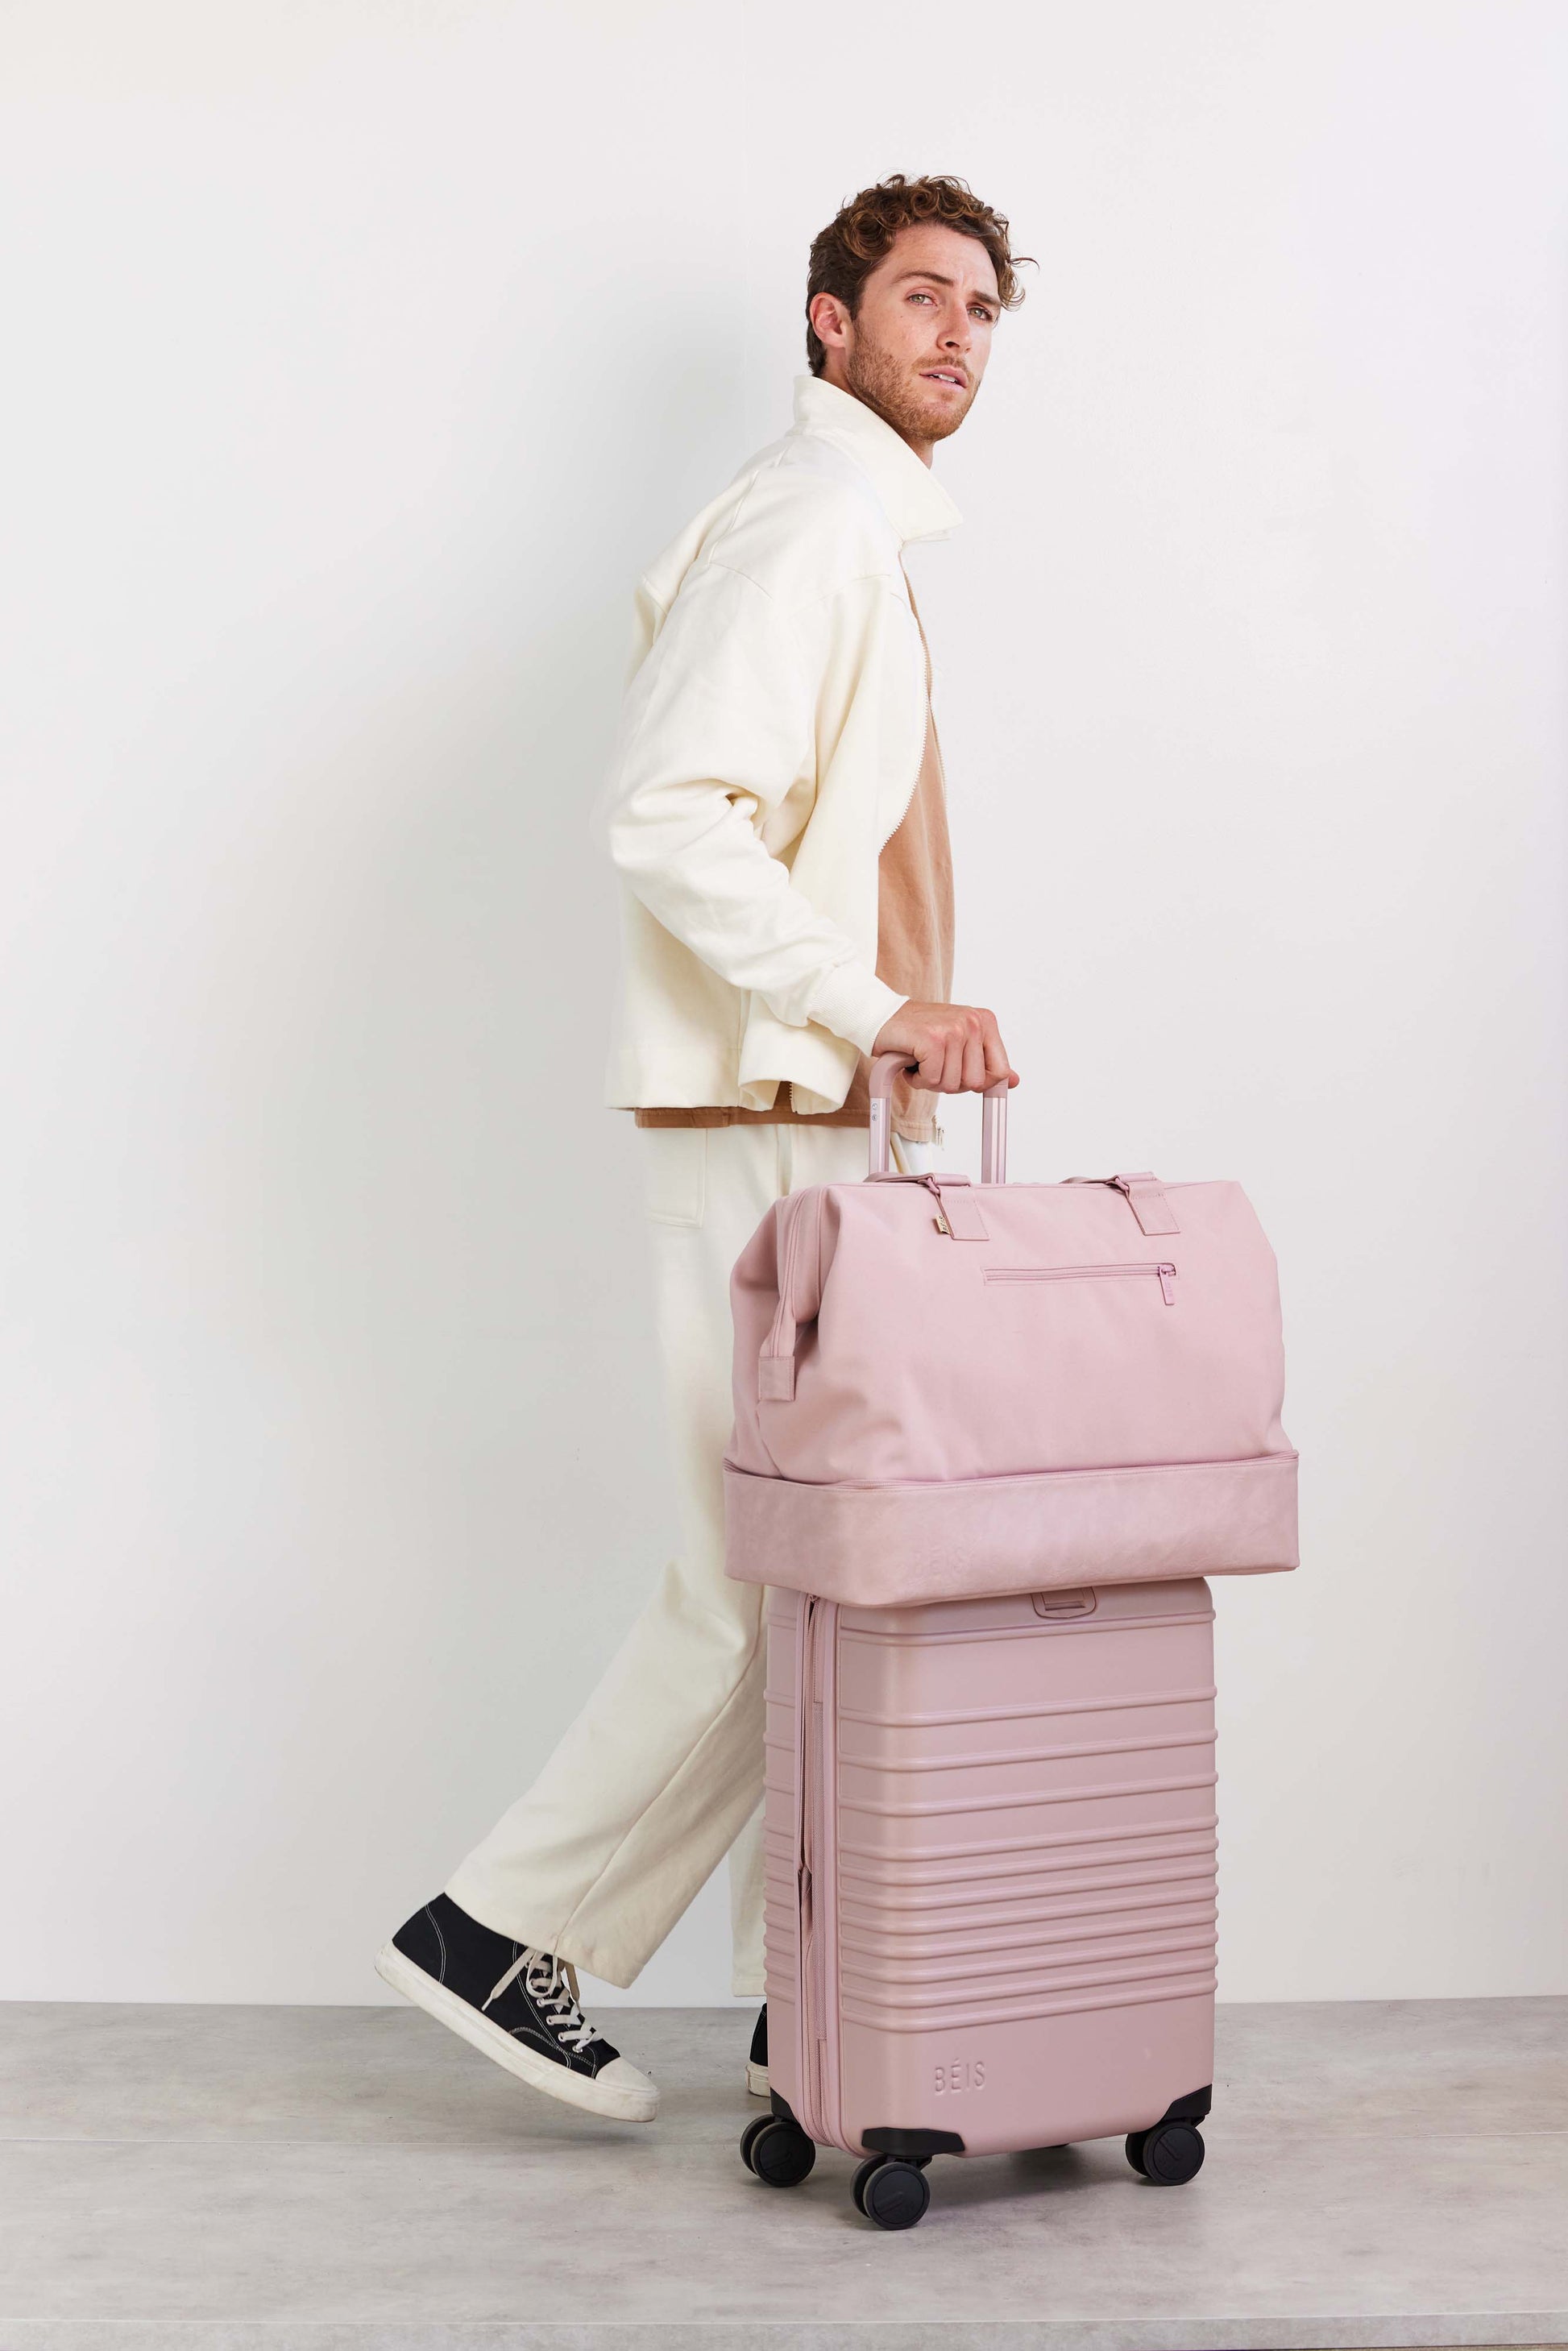 Béis The Mini Weekender Travel Bag in Atlas Pink